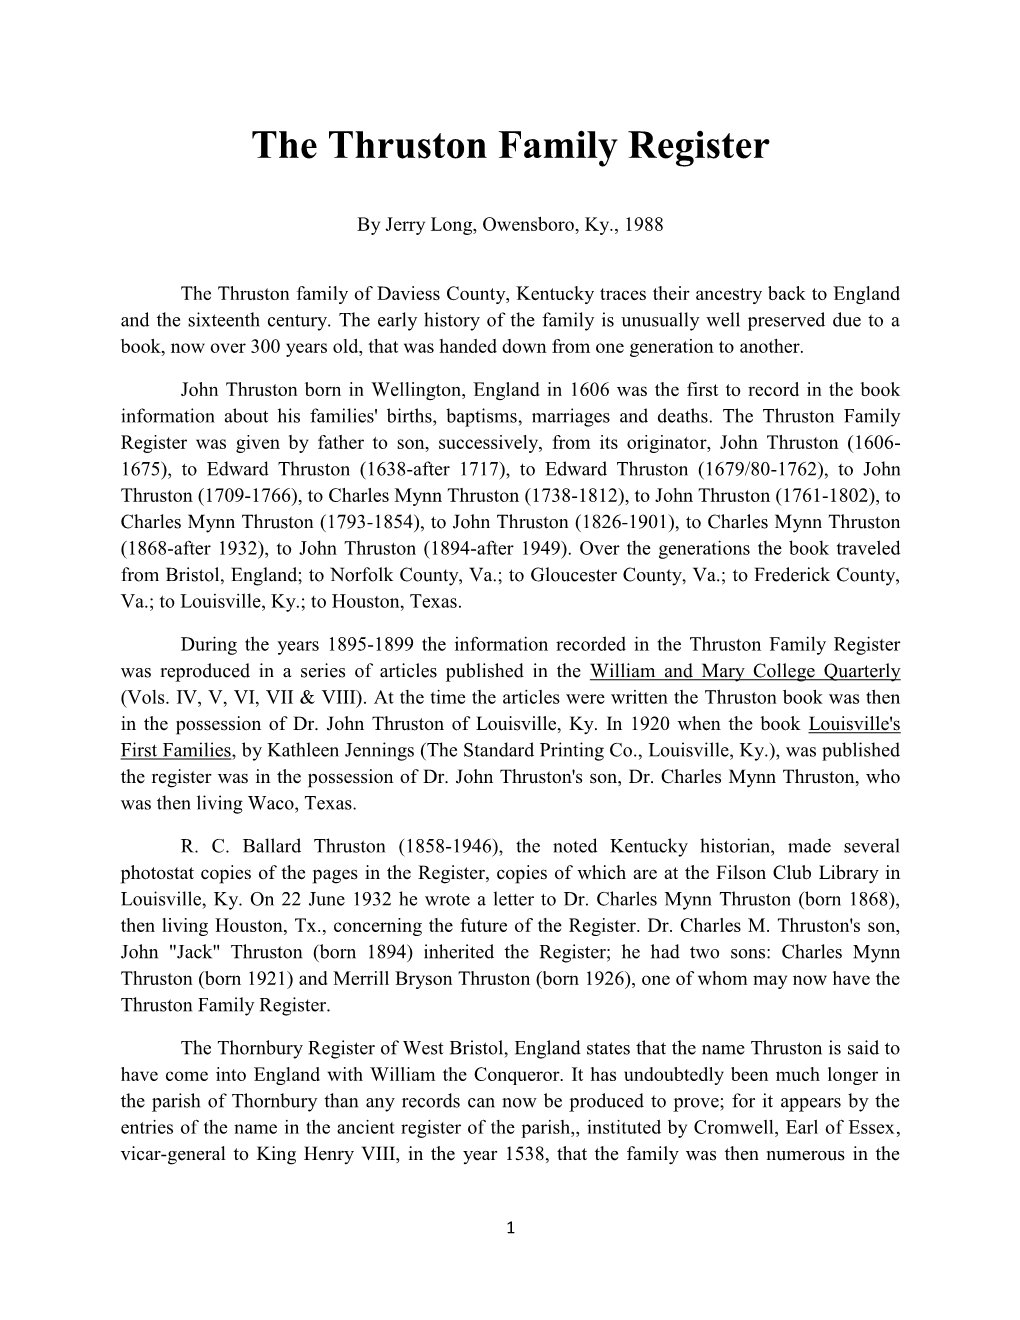 The Thruston Family Register